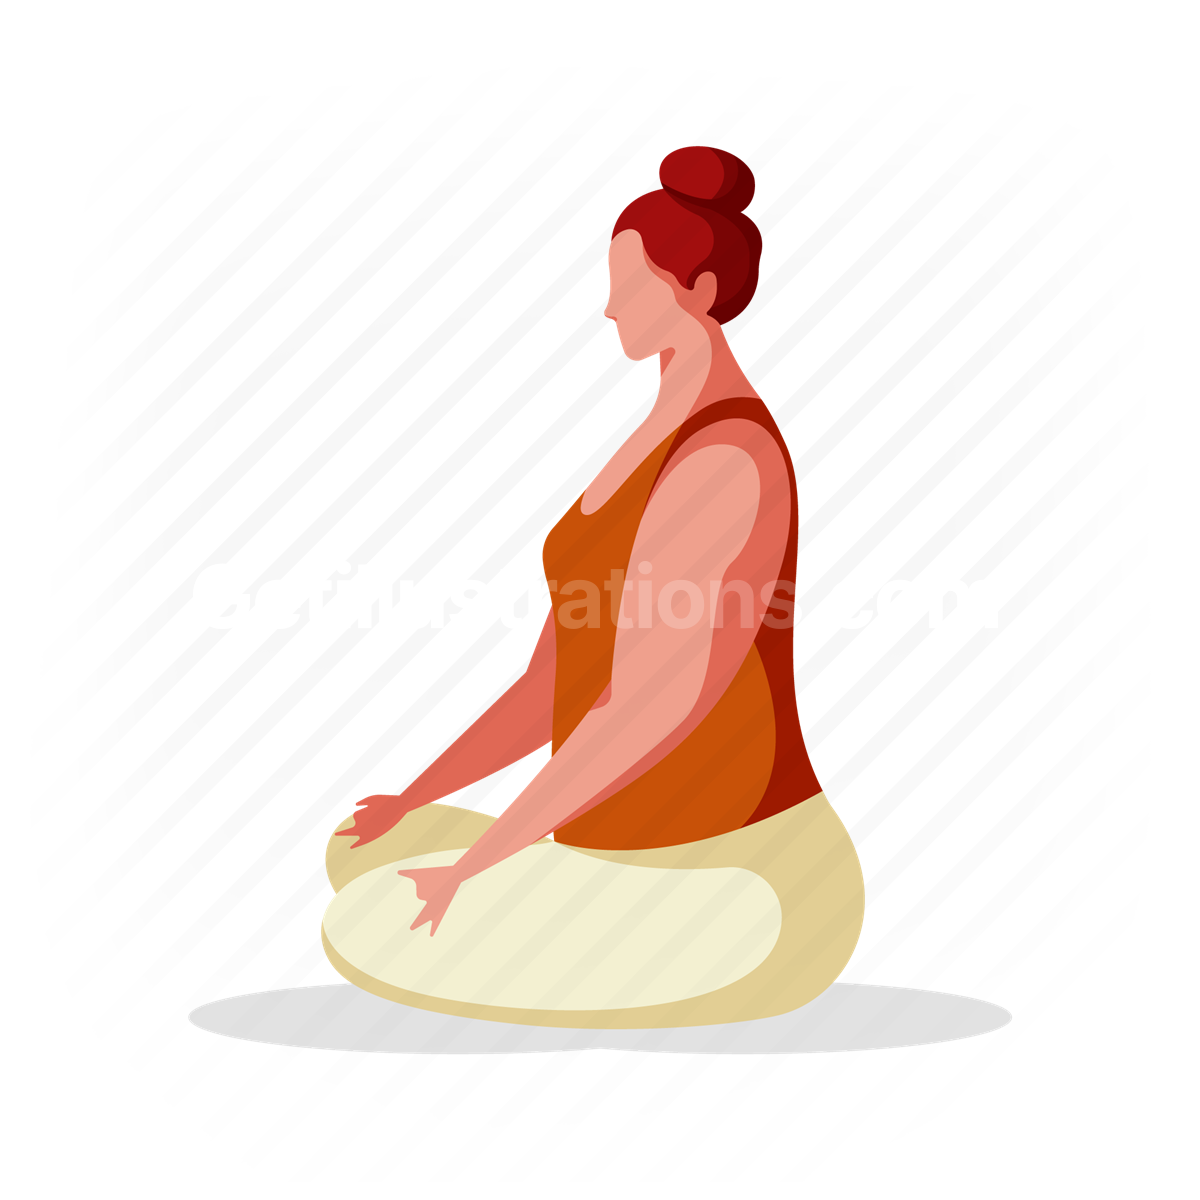 woman, meditate, meditation, fitness